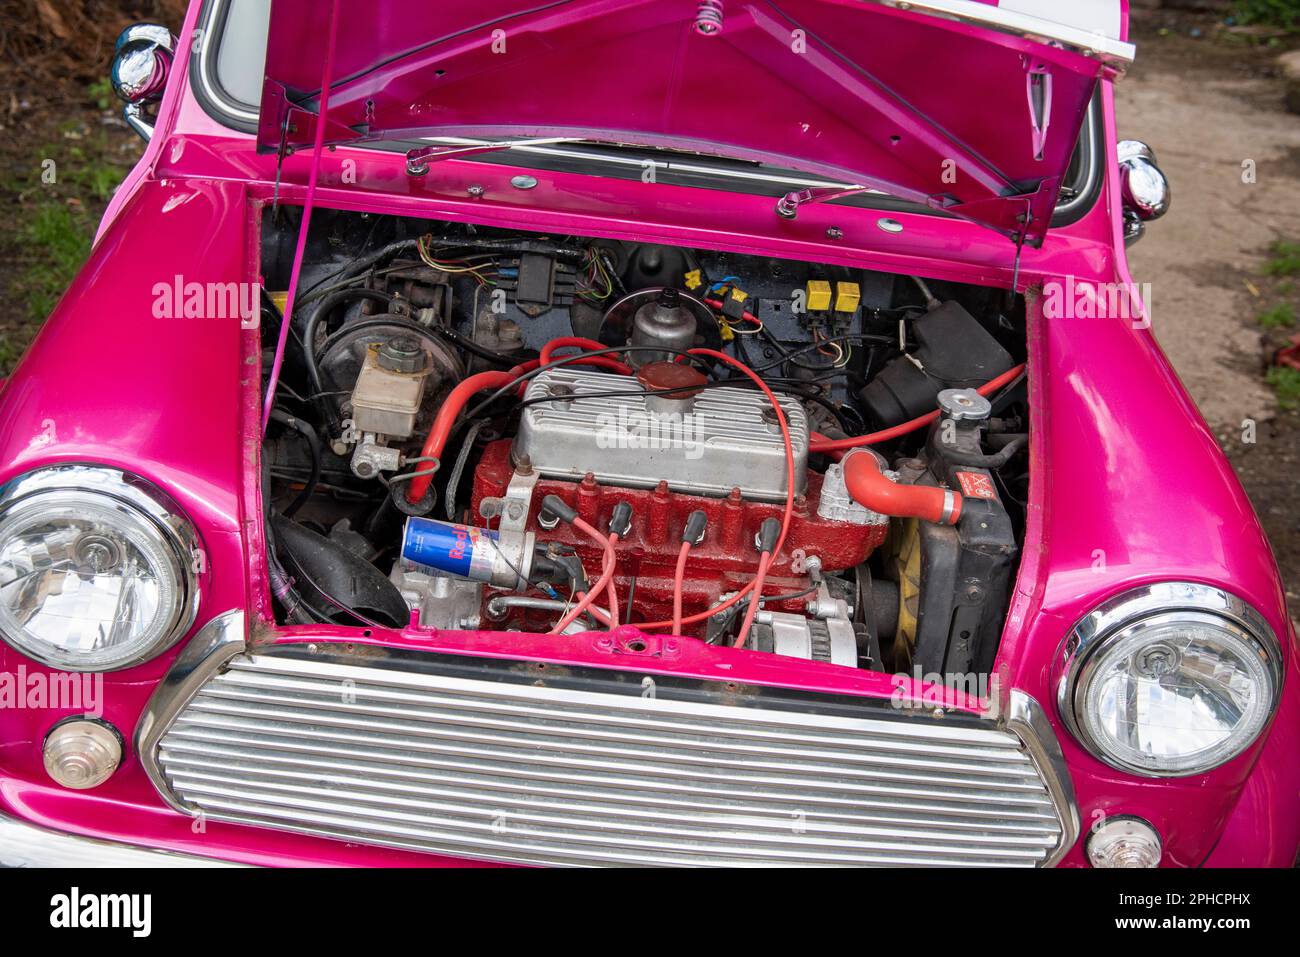 Classico anni Sessanta Austin Mini gv rosa metallizzato con il cofano in alto che mostra il motore Foto Stock